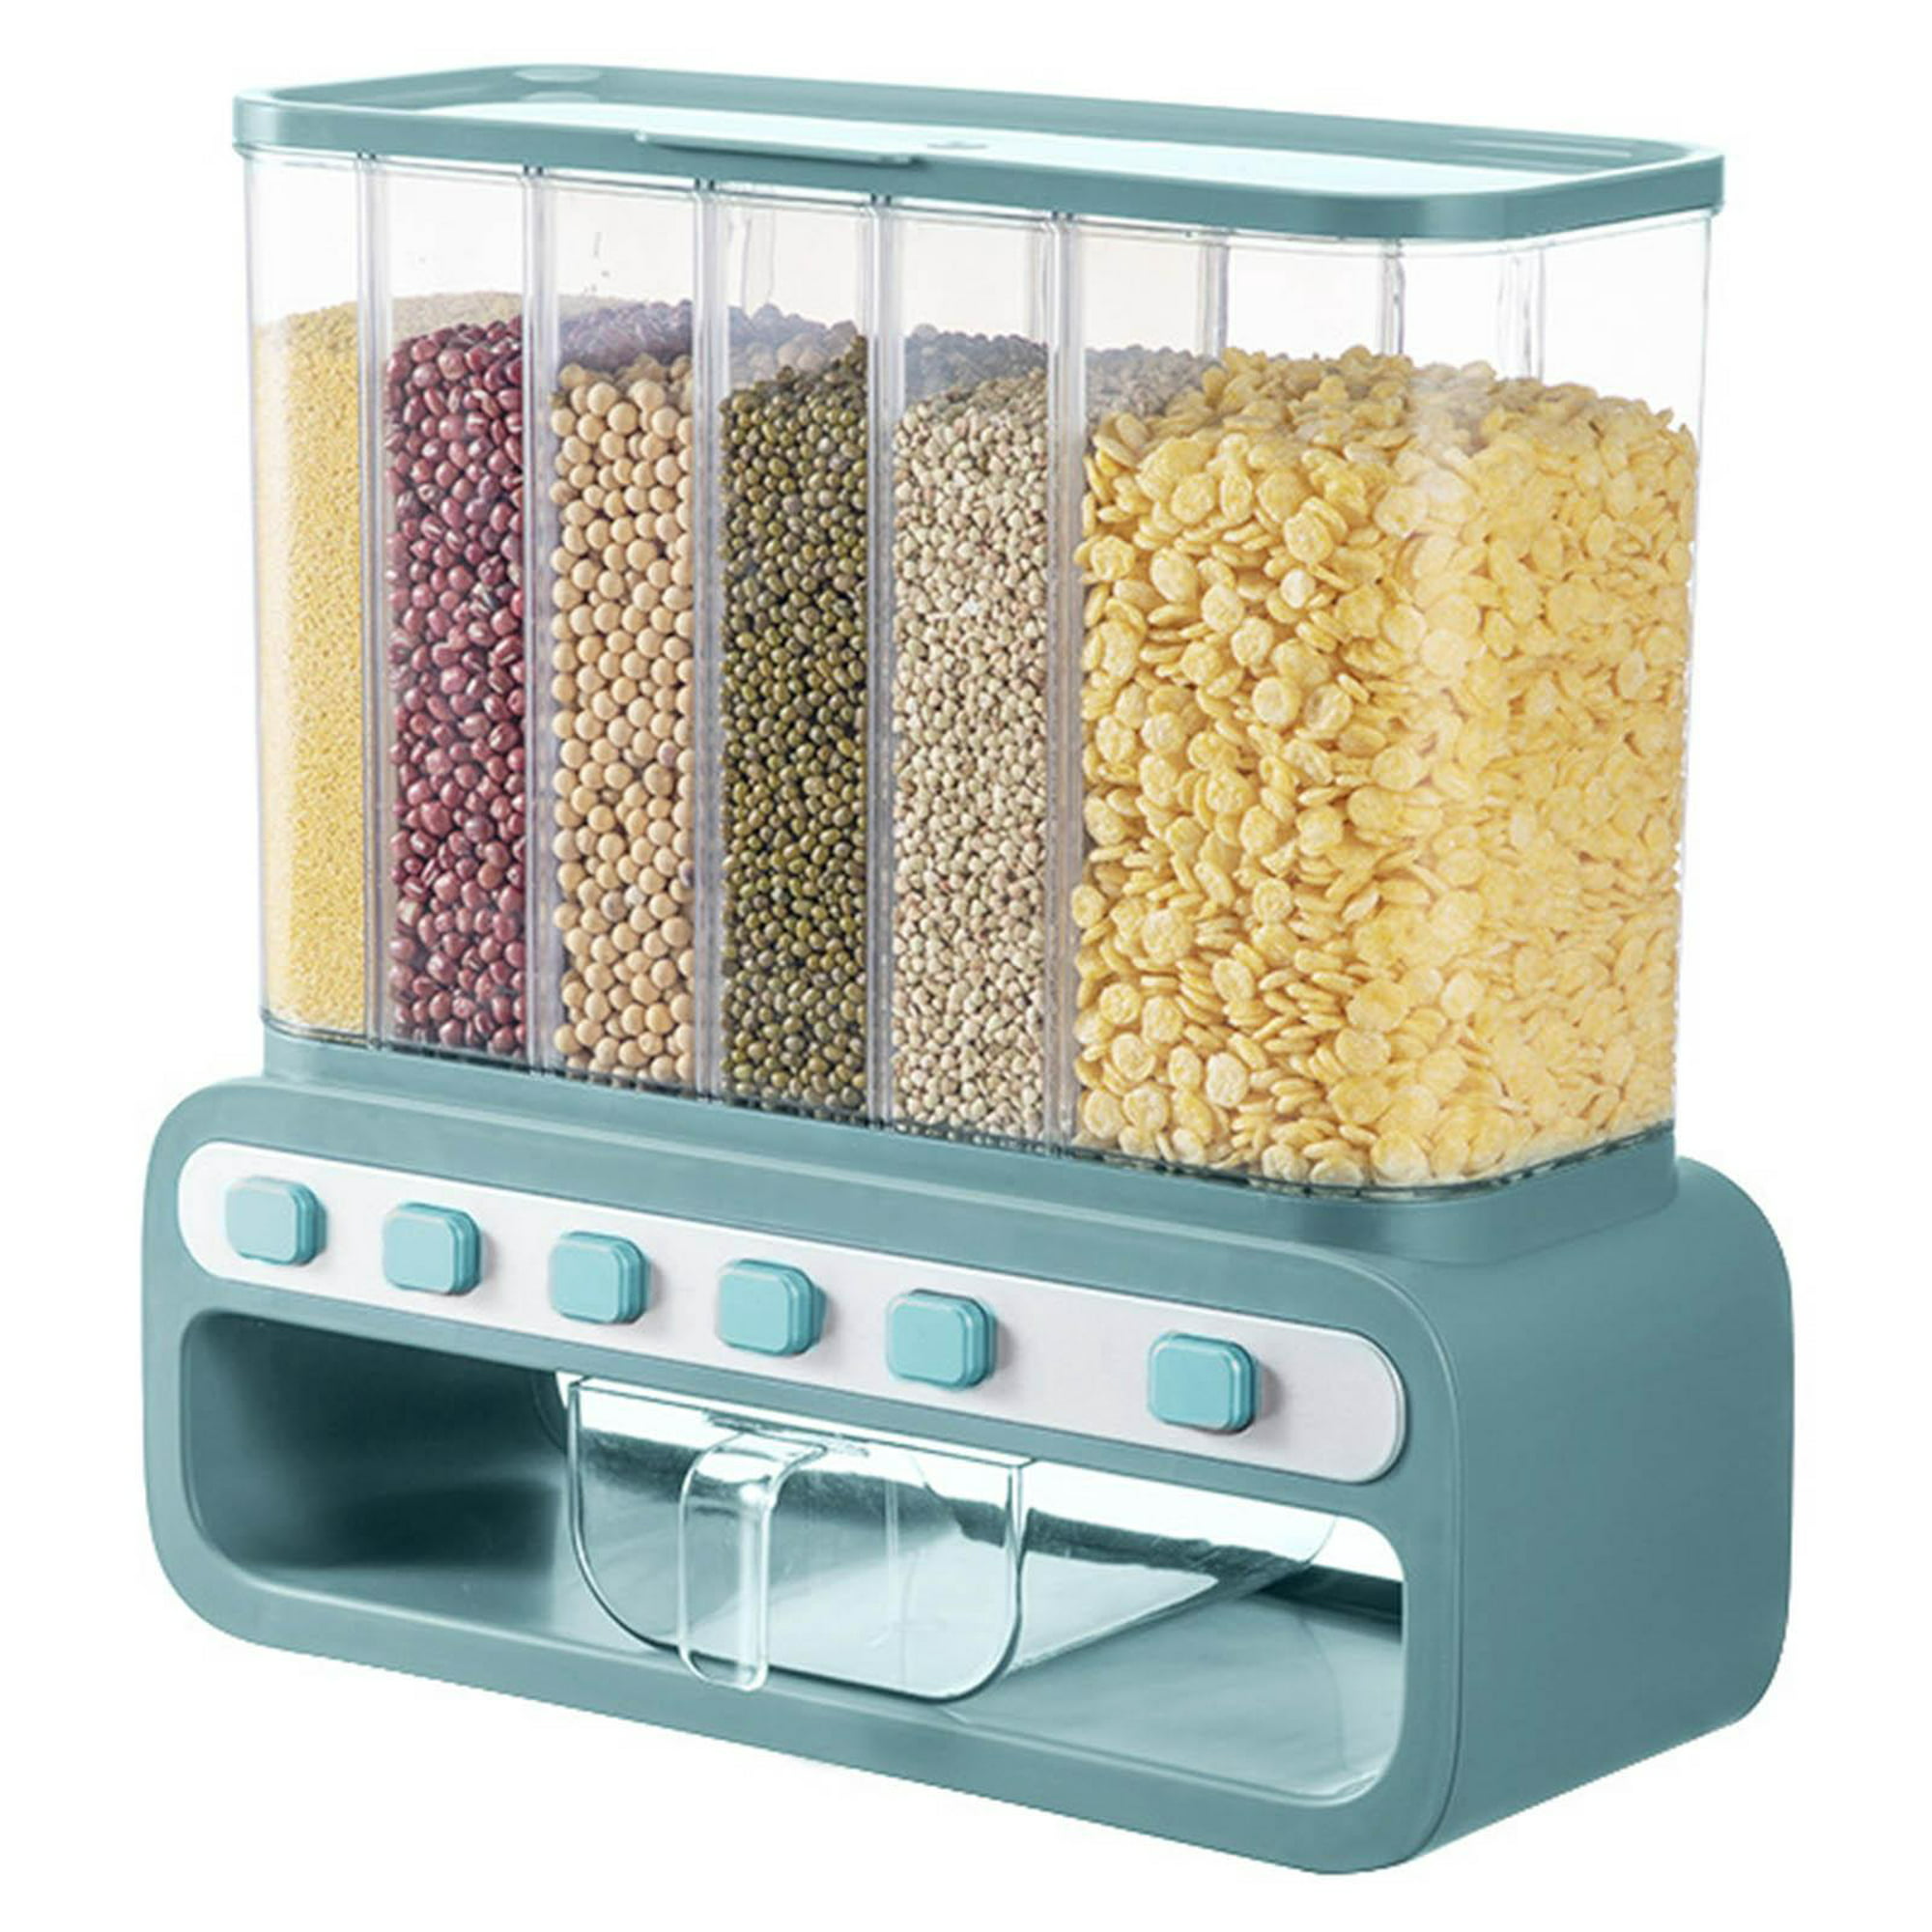 Dispensador para granos básicos y cereales como, arroz, frijoles, lentejas  con taza medidora Con 6 espacios para colocar tus granos y…